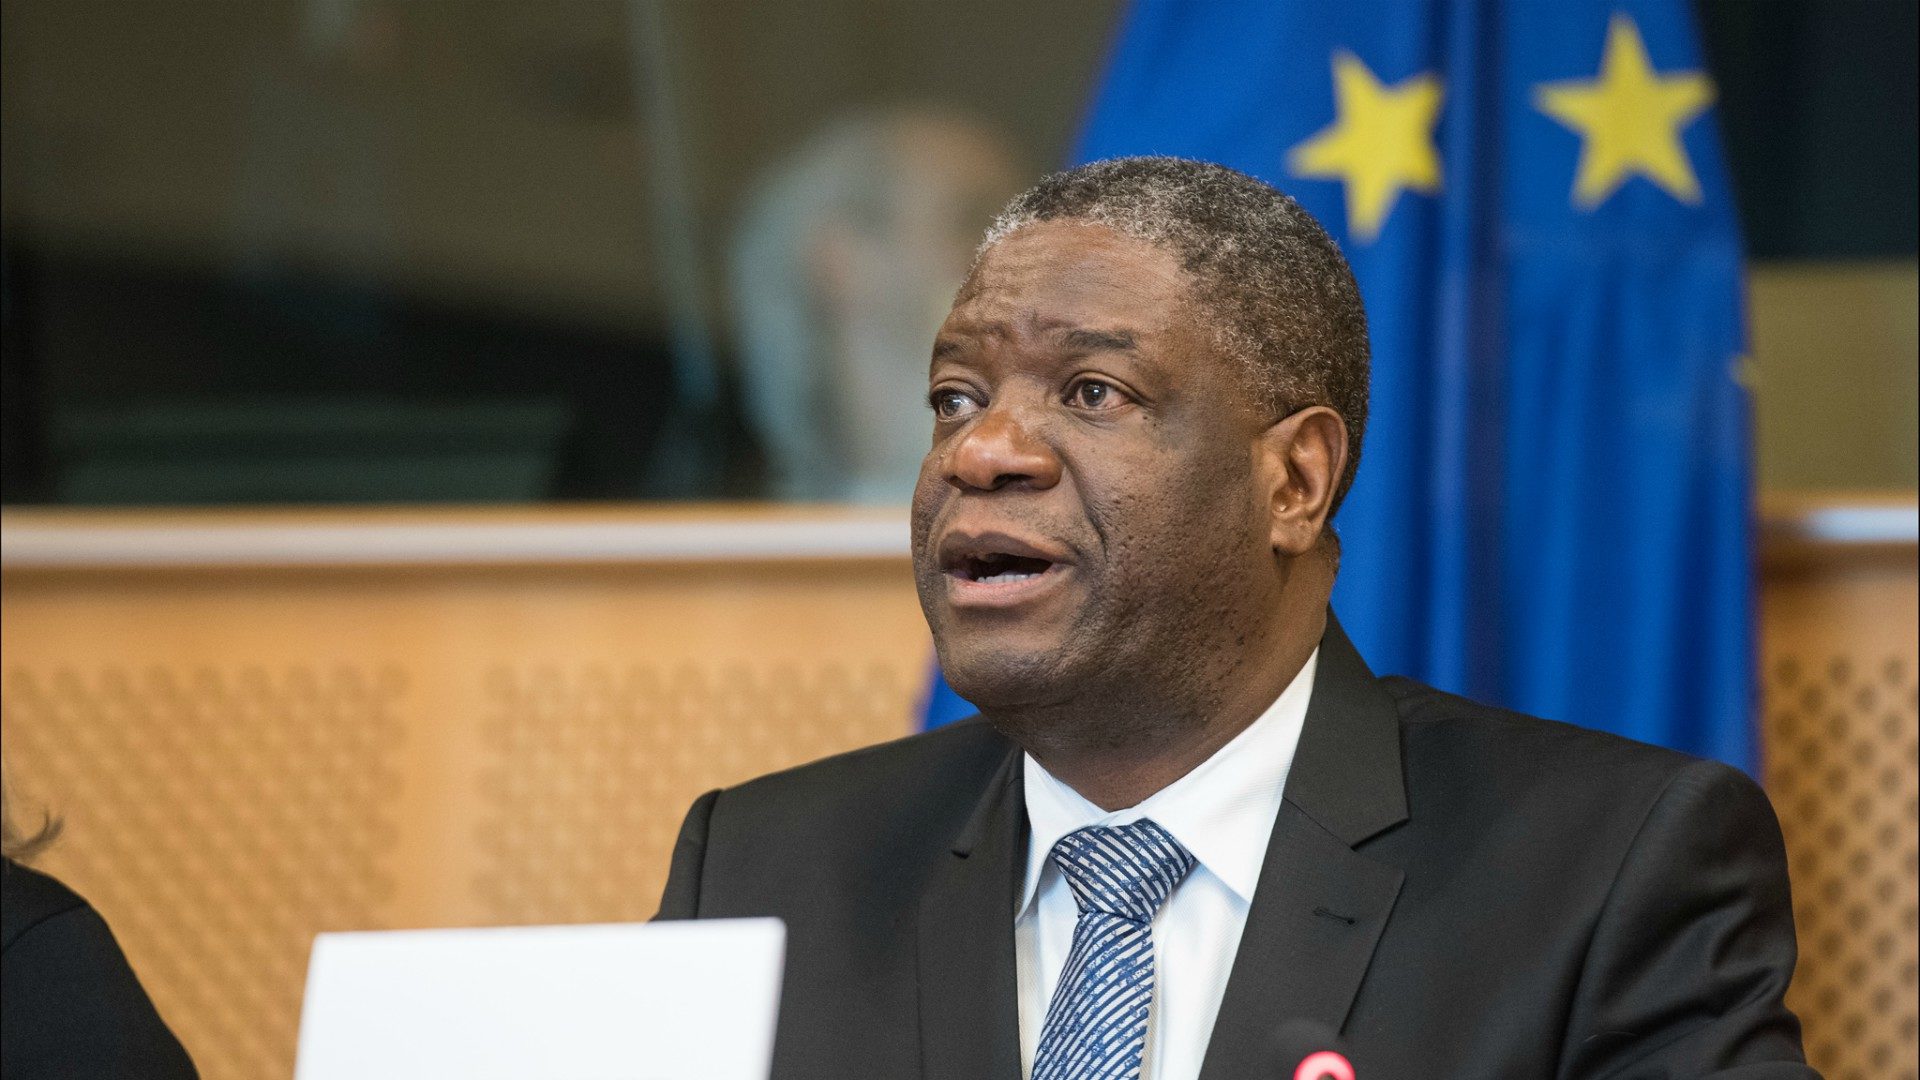 Le docteur Denis Mukwege lutte contre les viols en RDC | © European Parliament/Flickr/CC BY-NC_ND 2.0